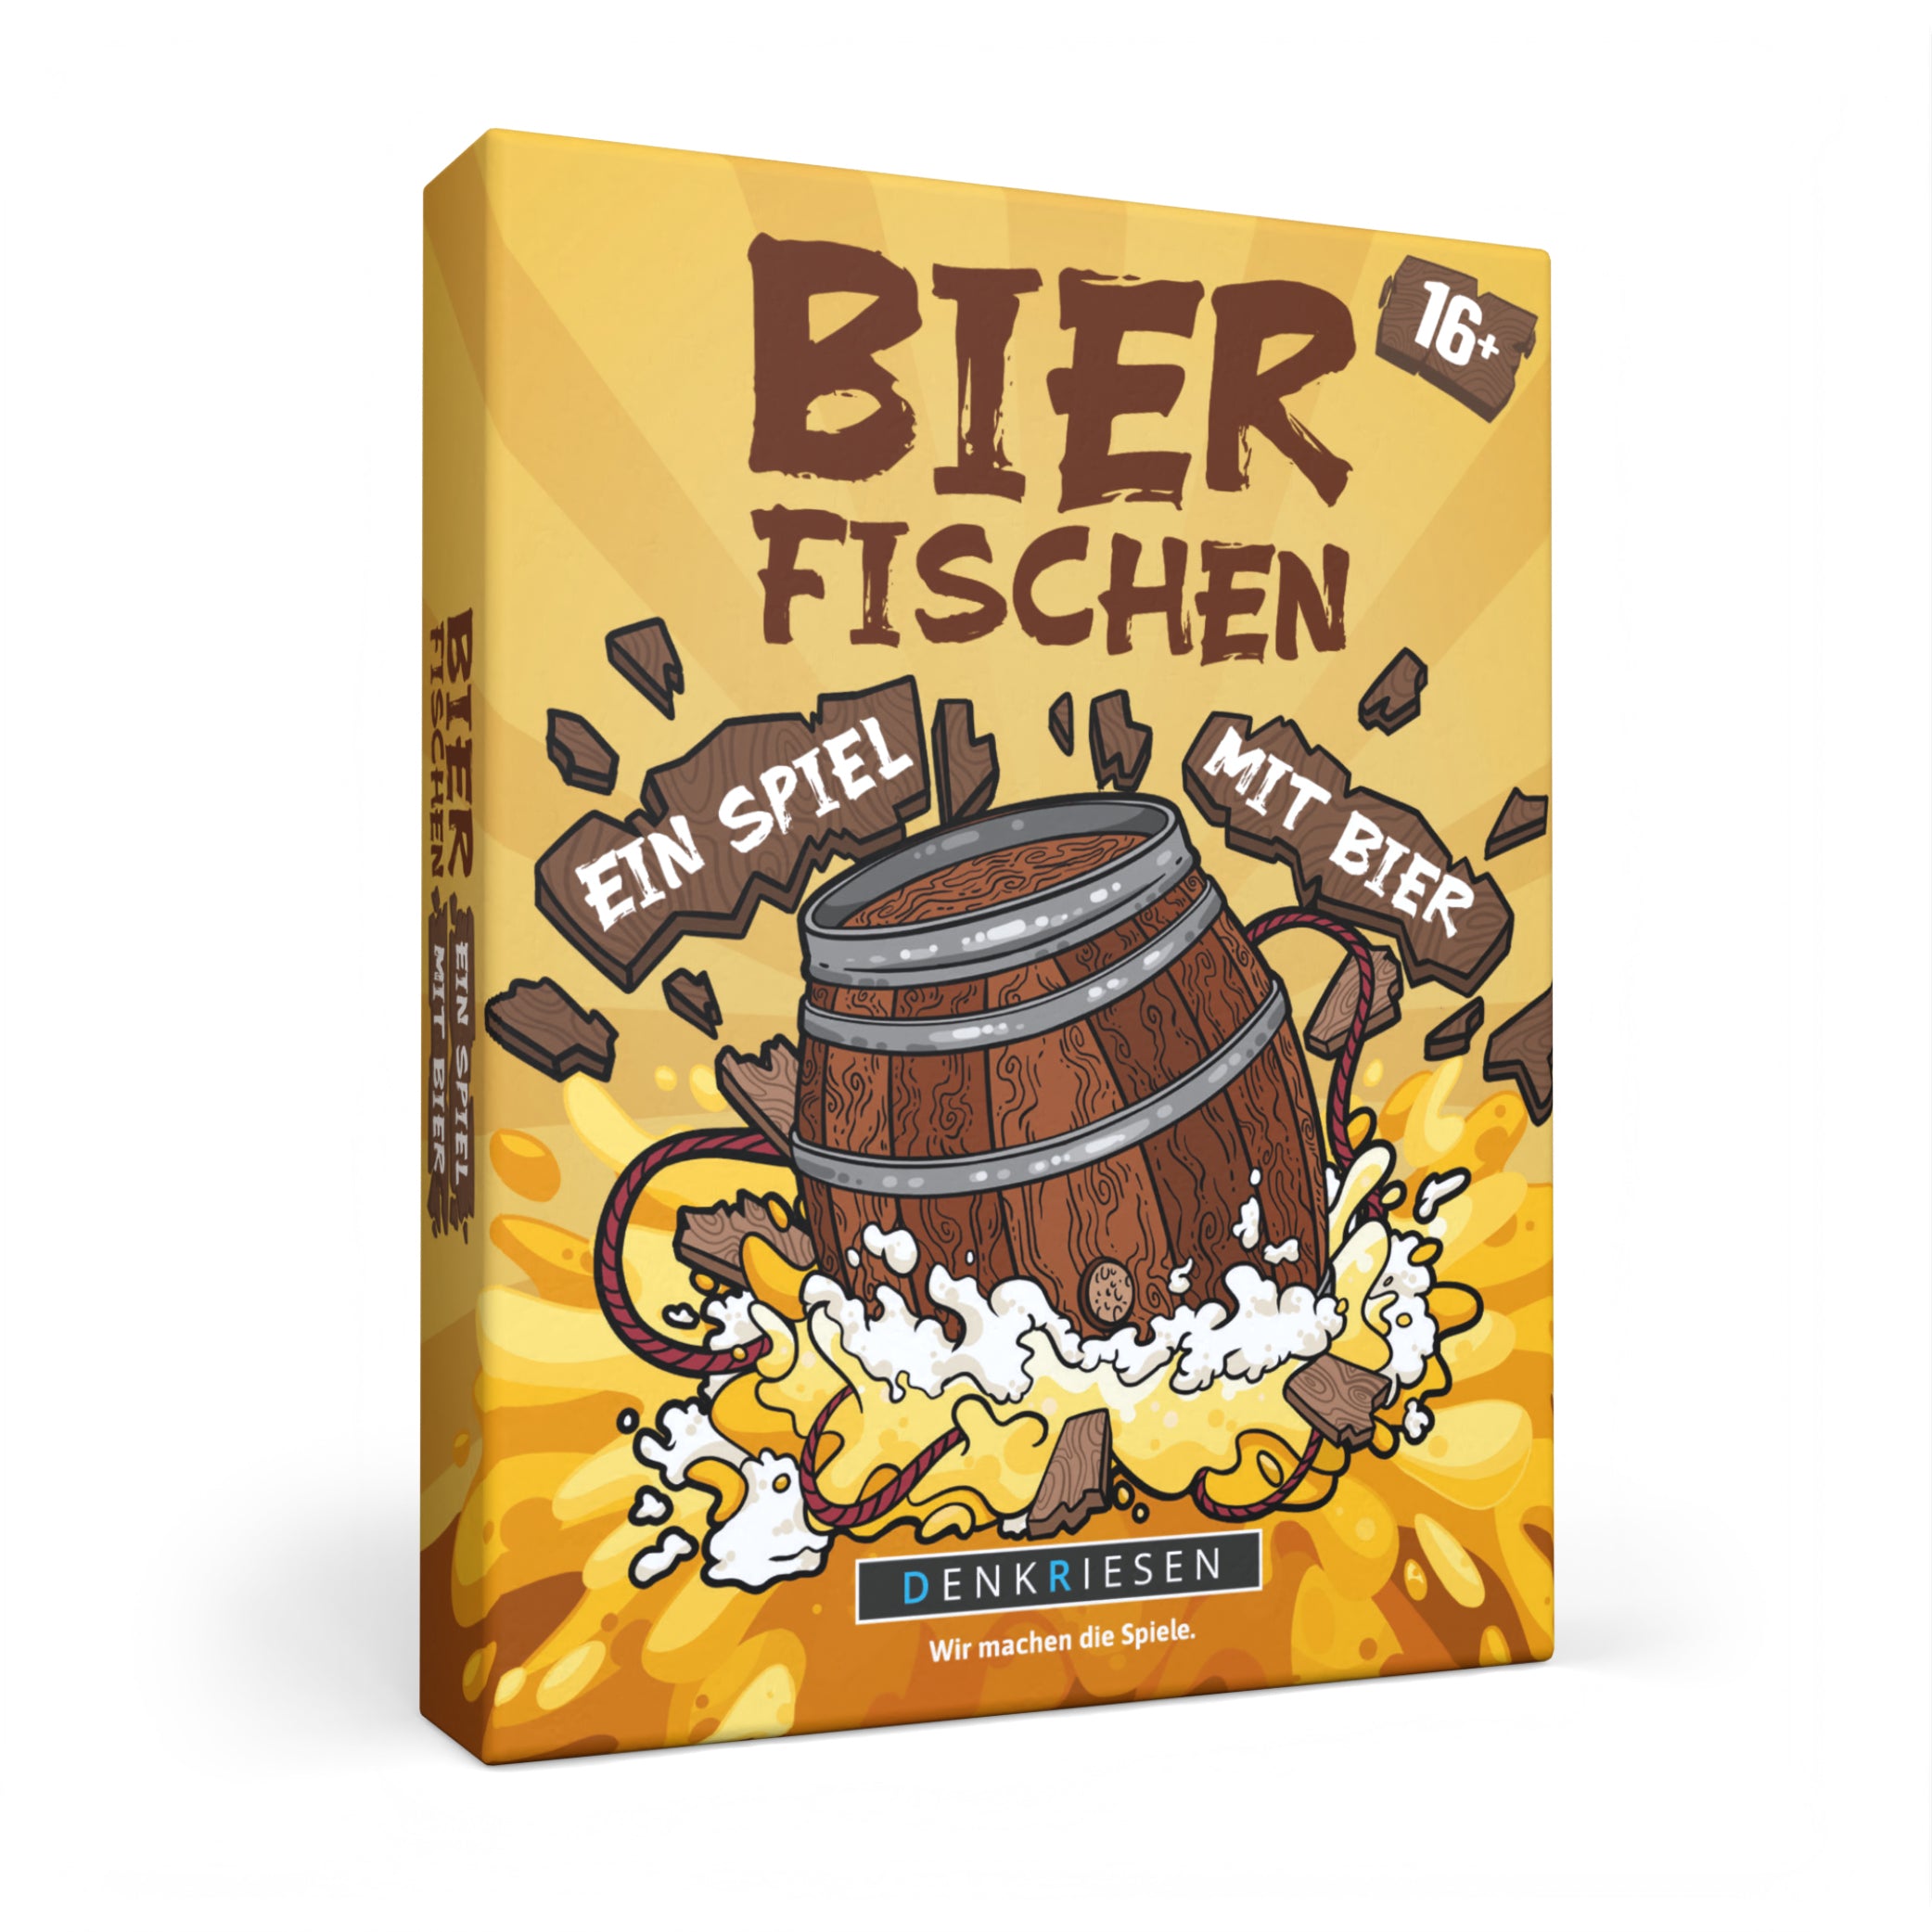 Bierfischen – "Ein Spiel mit Bier."